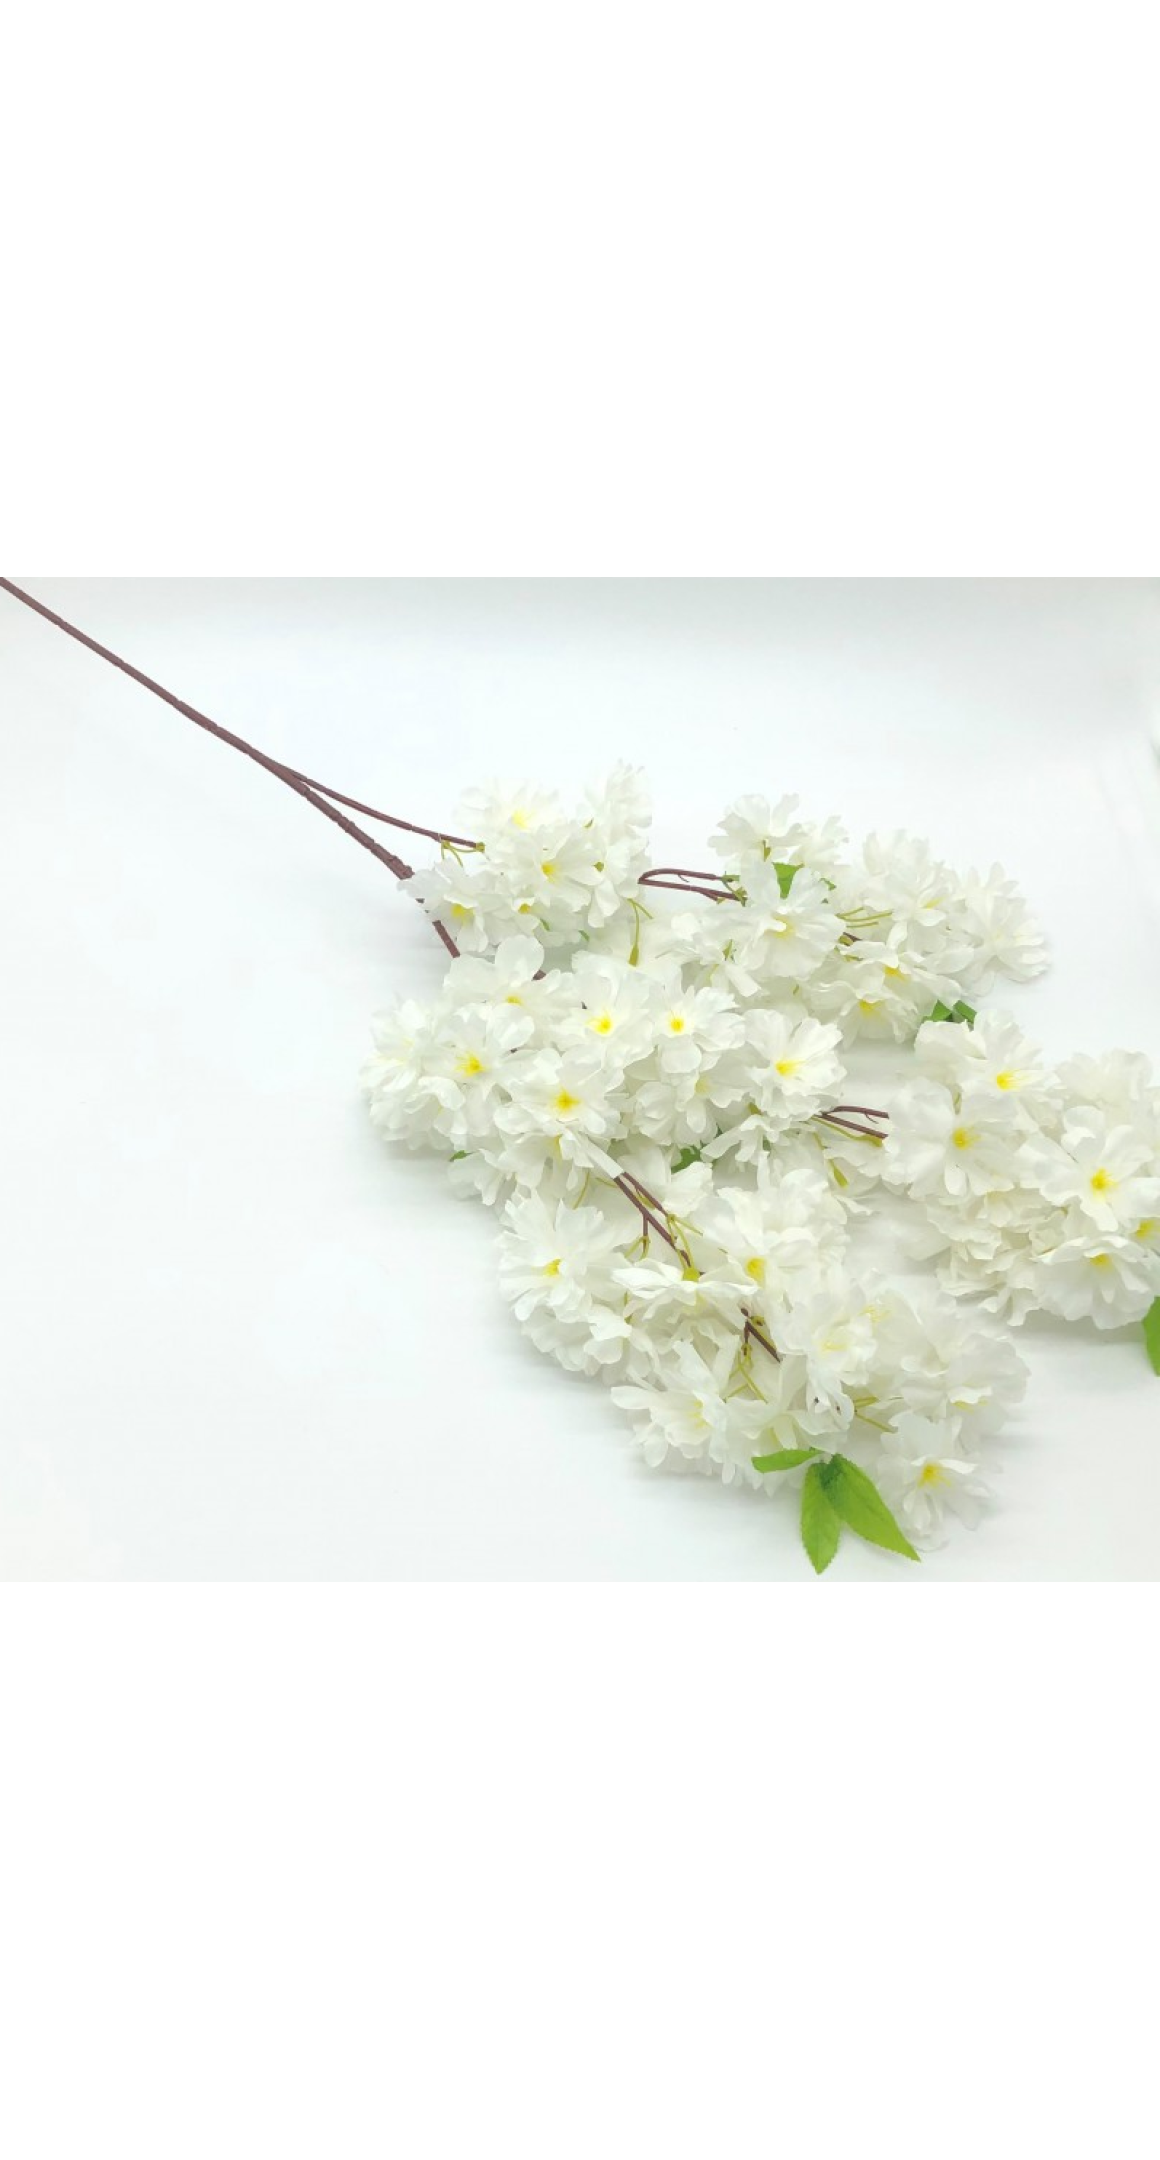 Galho Cerejeira Com Pinha e Folhas - 30cm - 1 unidade - Cromus - Rizzo -  Rizzo Embalagens